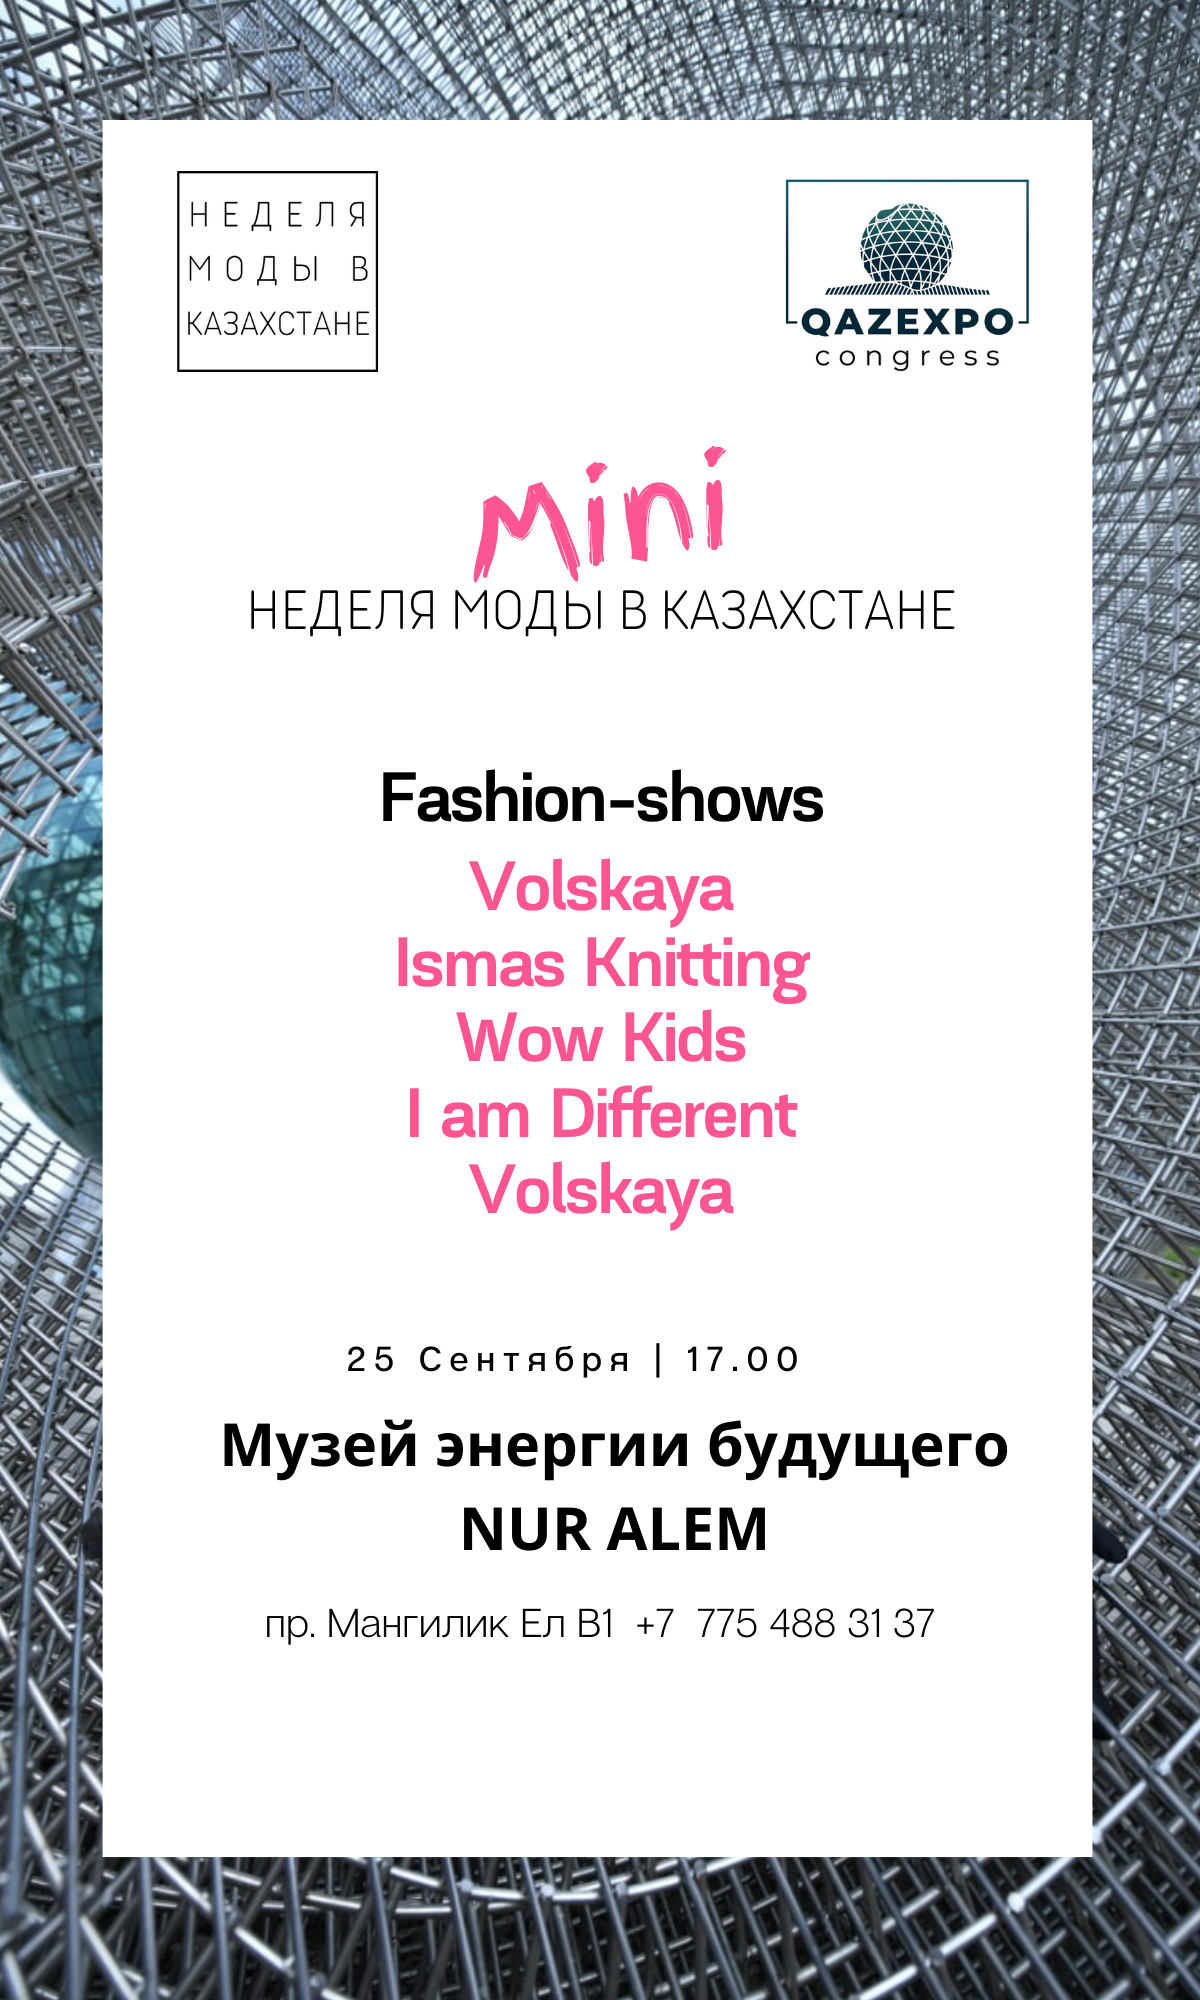 «Mini Неделя моды в Казахстане» пройдёт в музее NUR ALEM